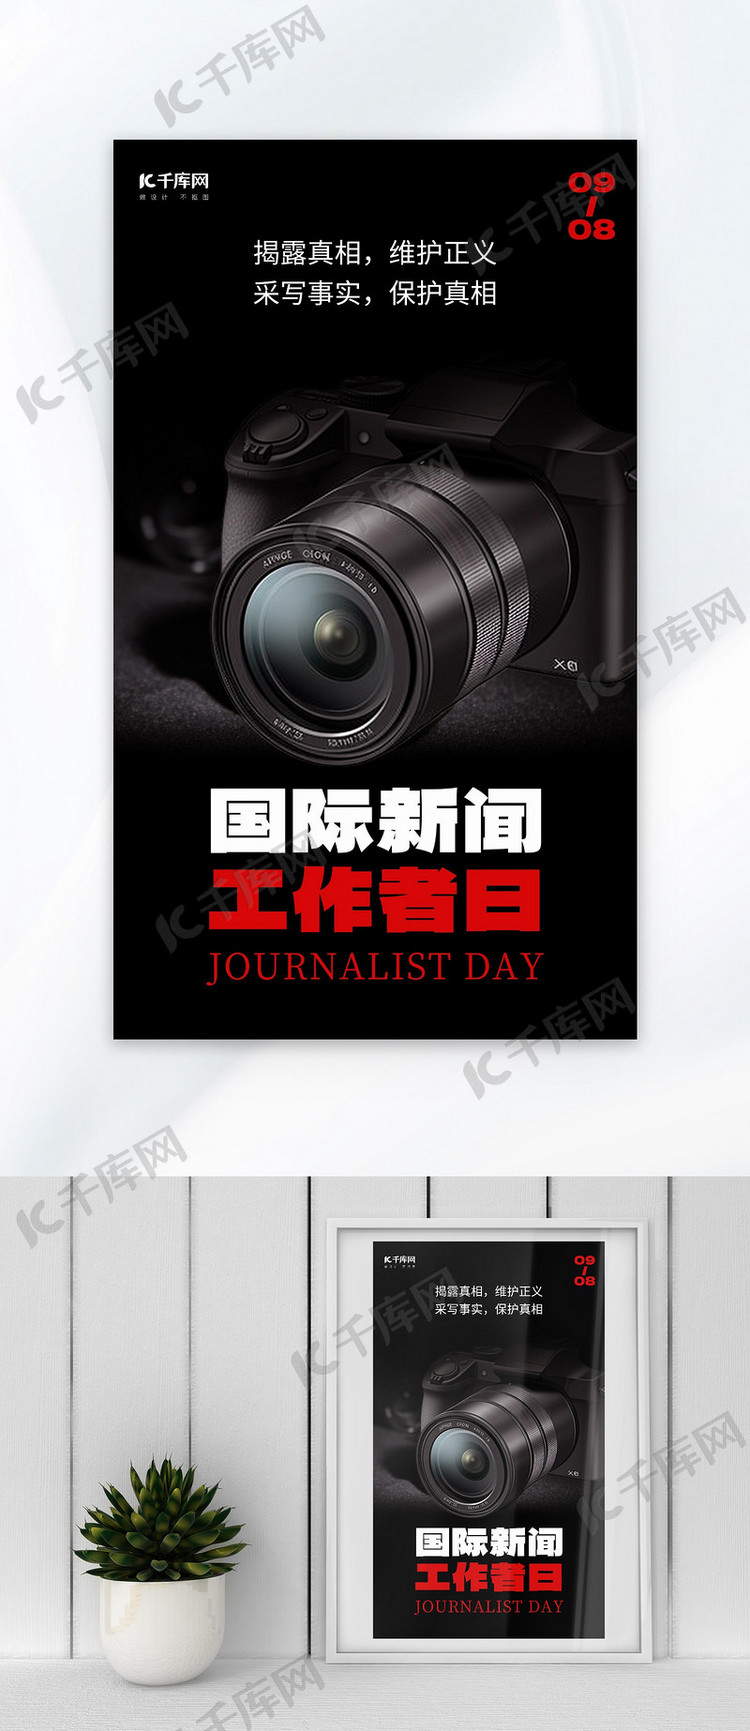 国际新闻工作者日摄像机黑色简约大广告营销海报